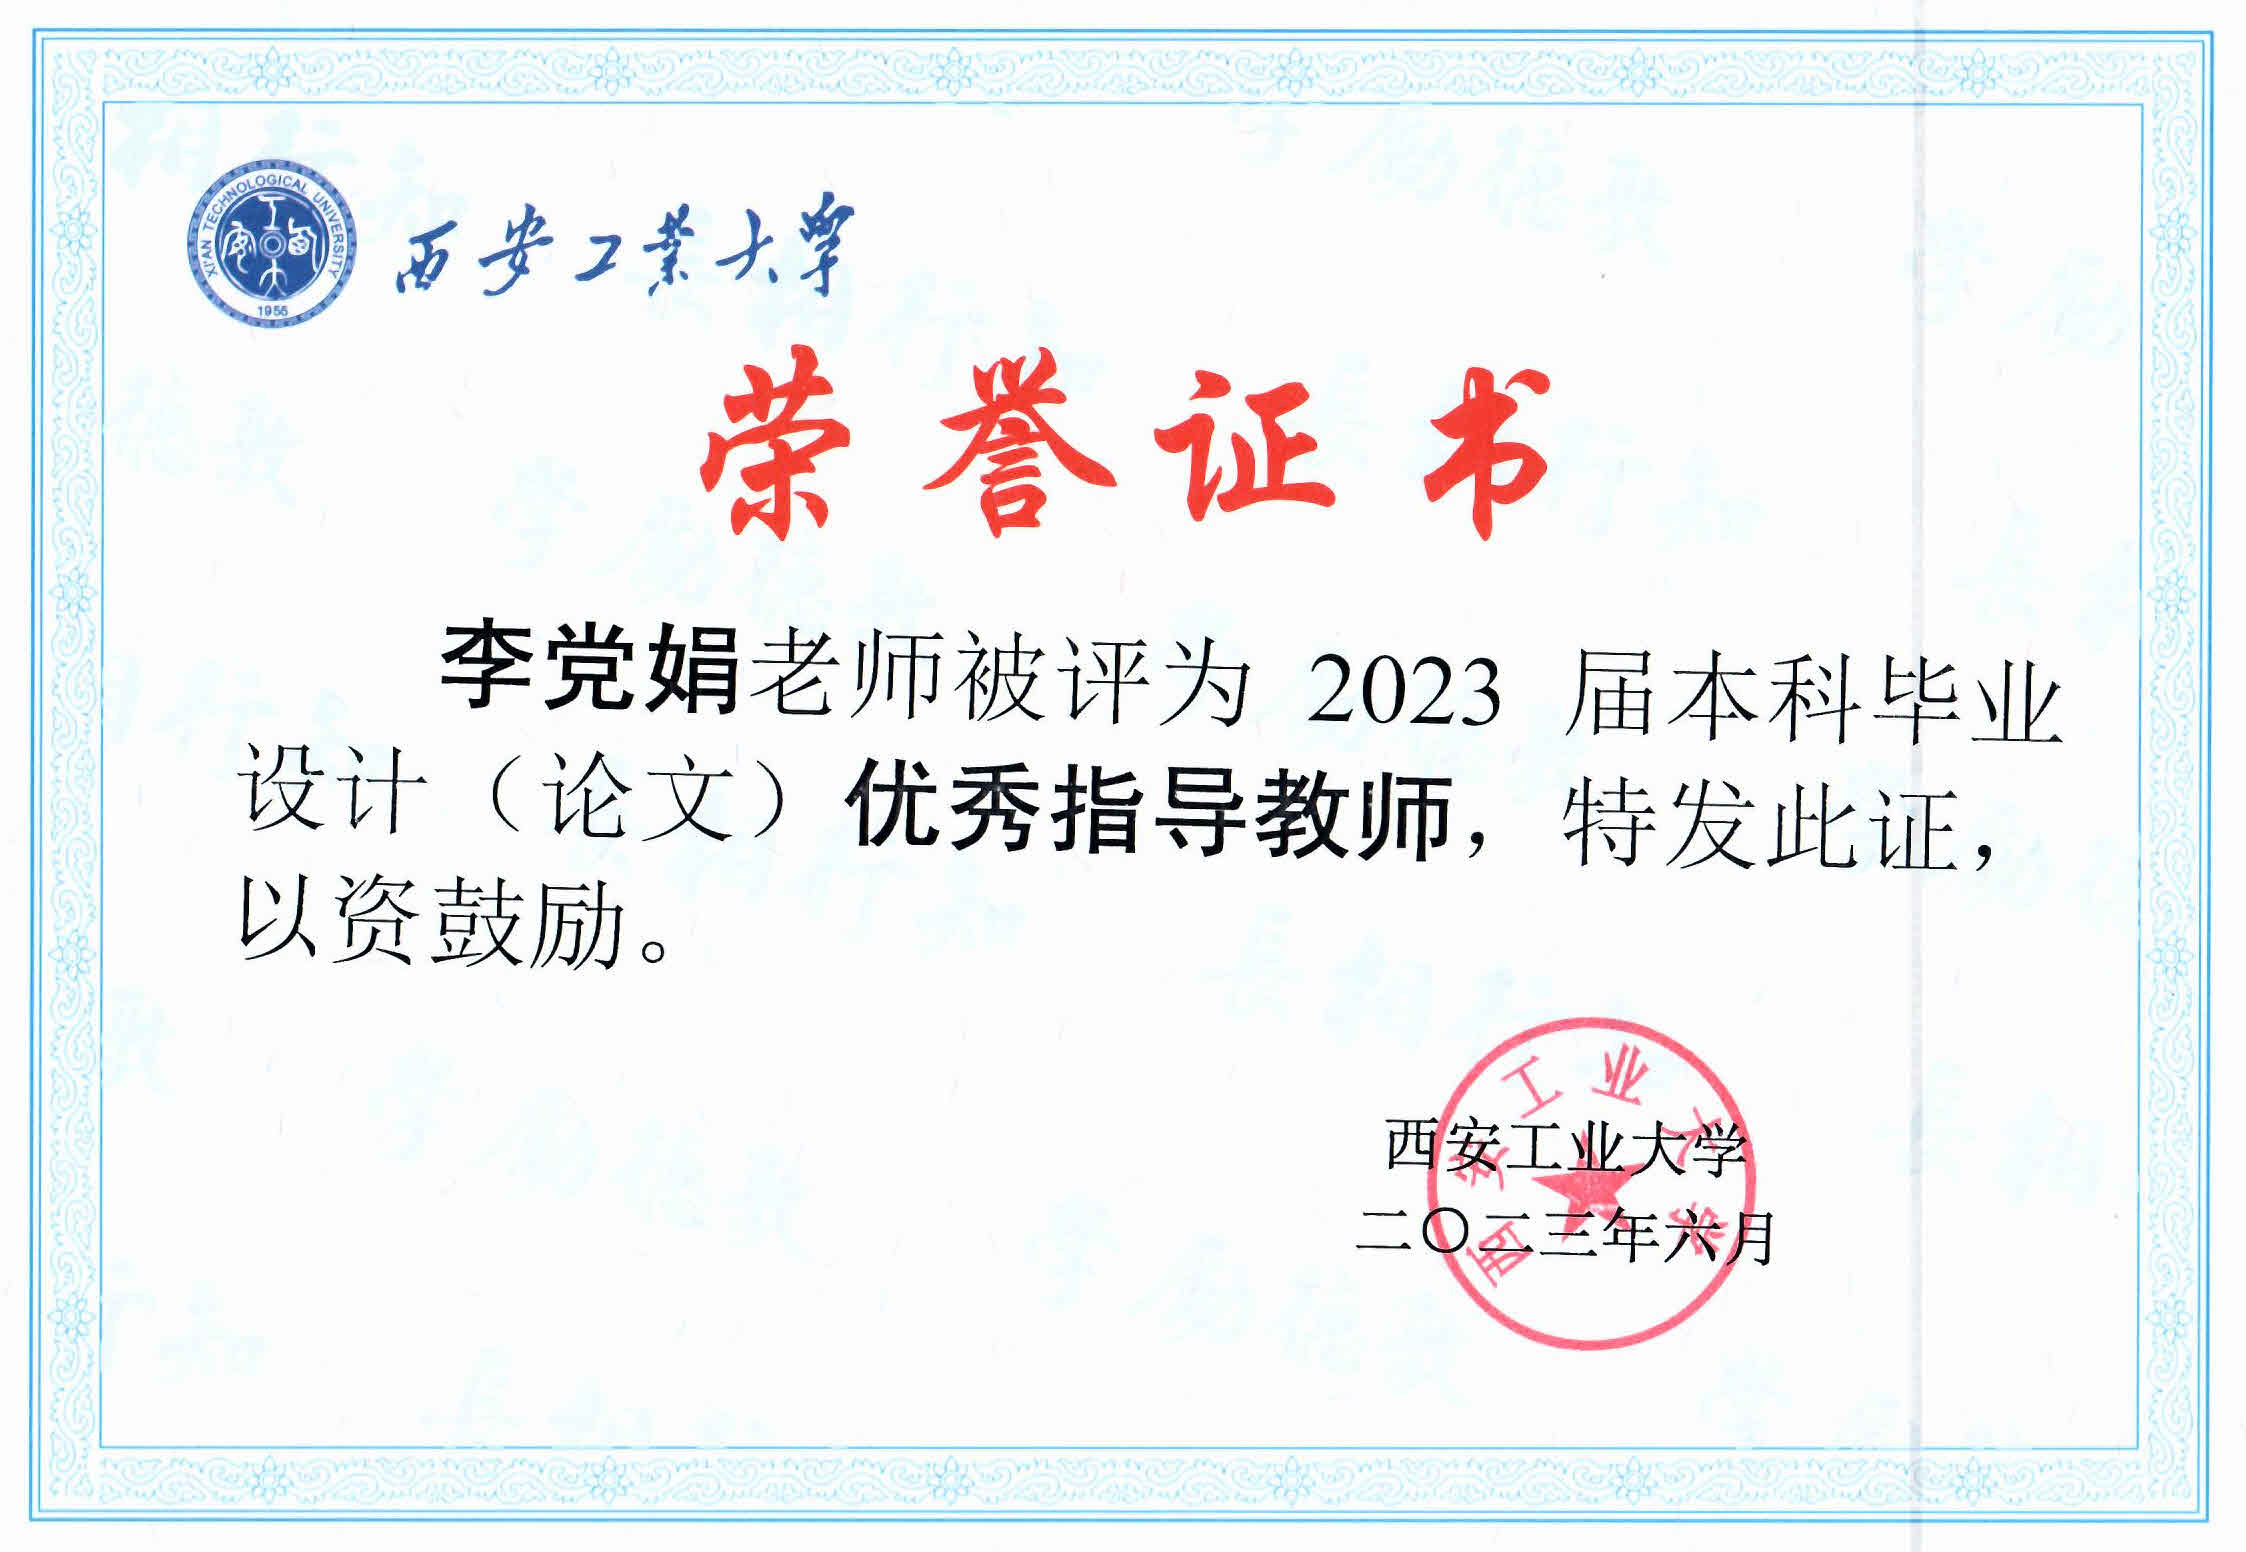 吴慎将教授、李党娟副教授被评为2023年优秀毕业